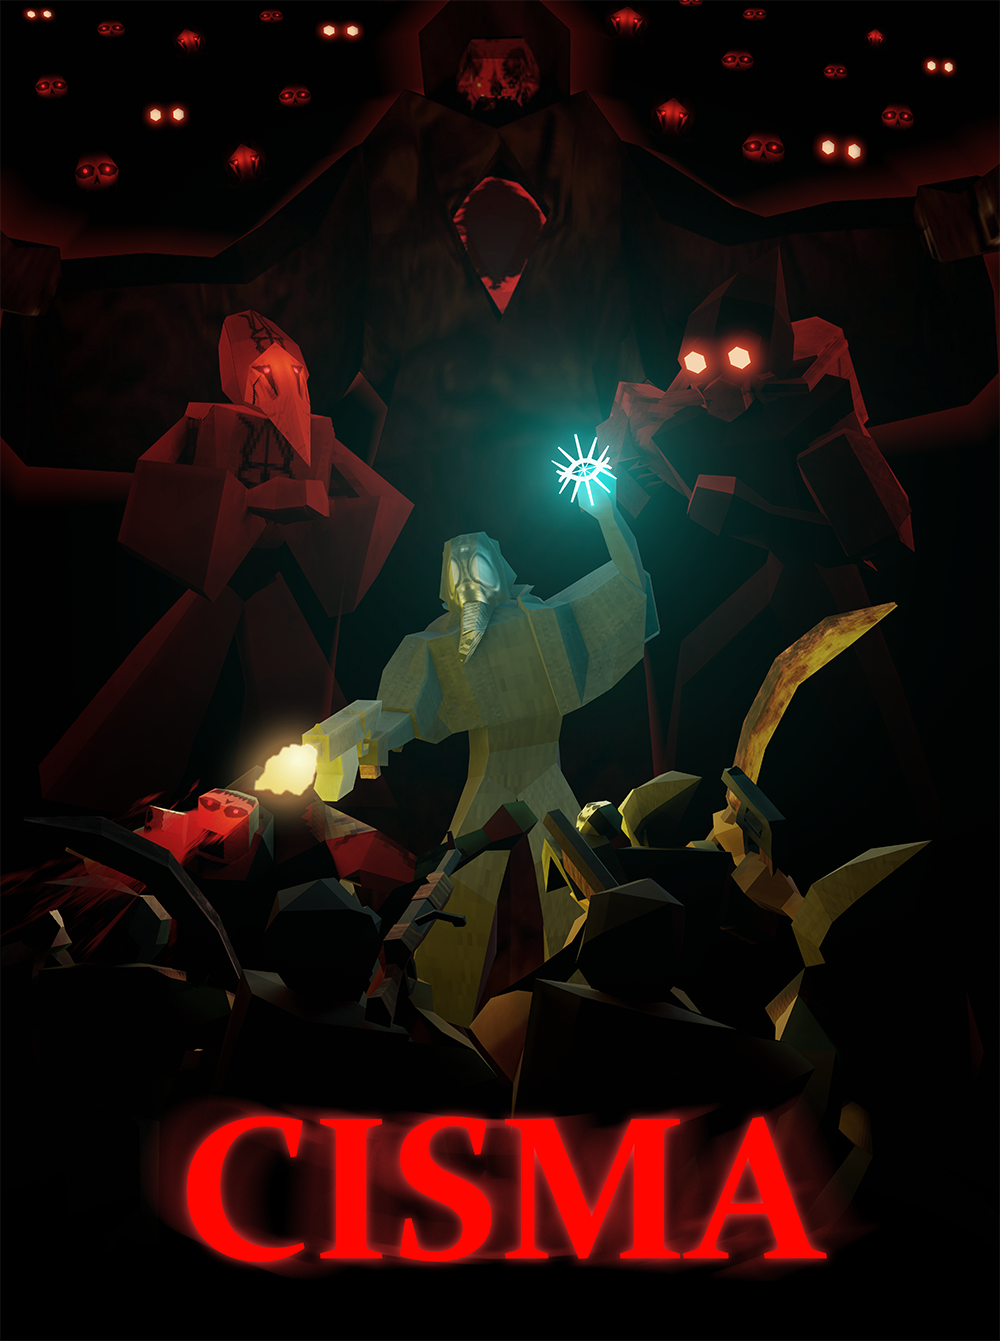 Cisma